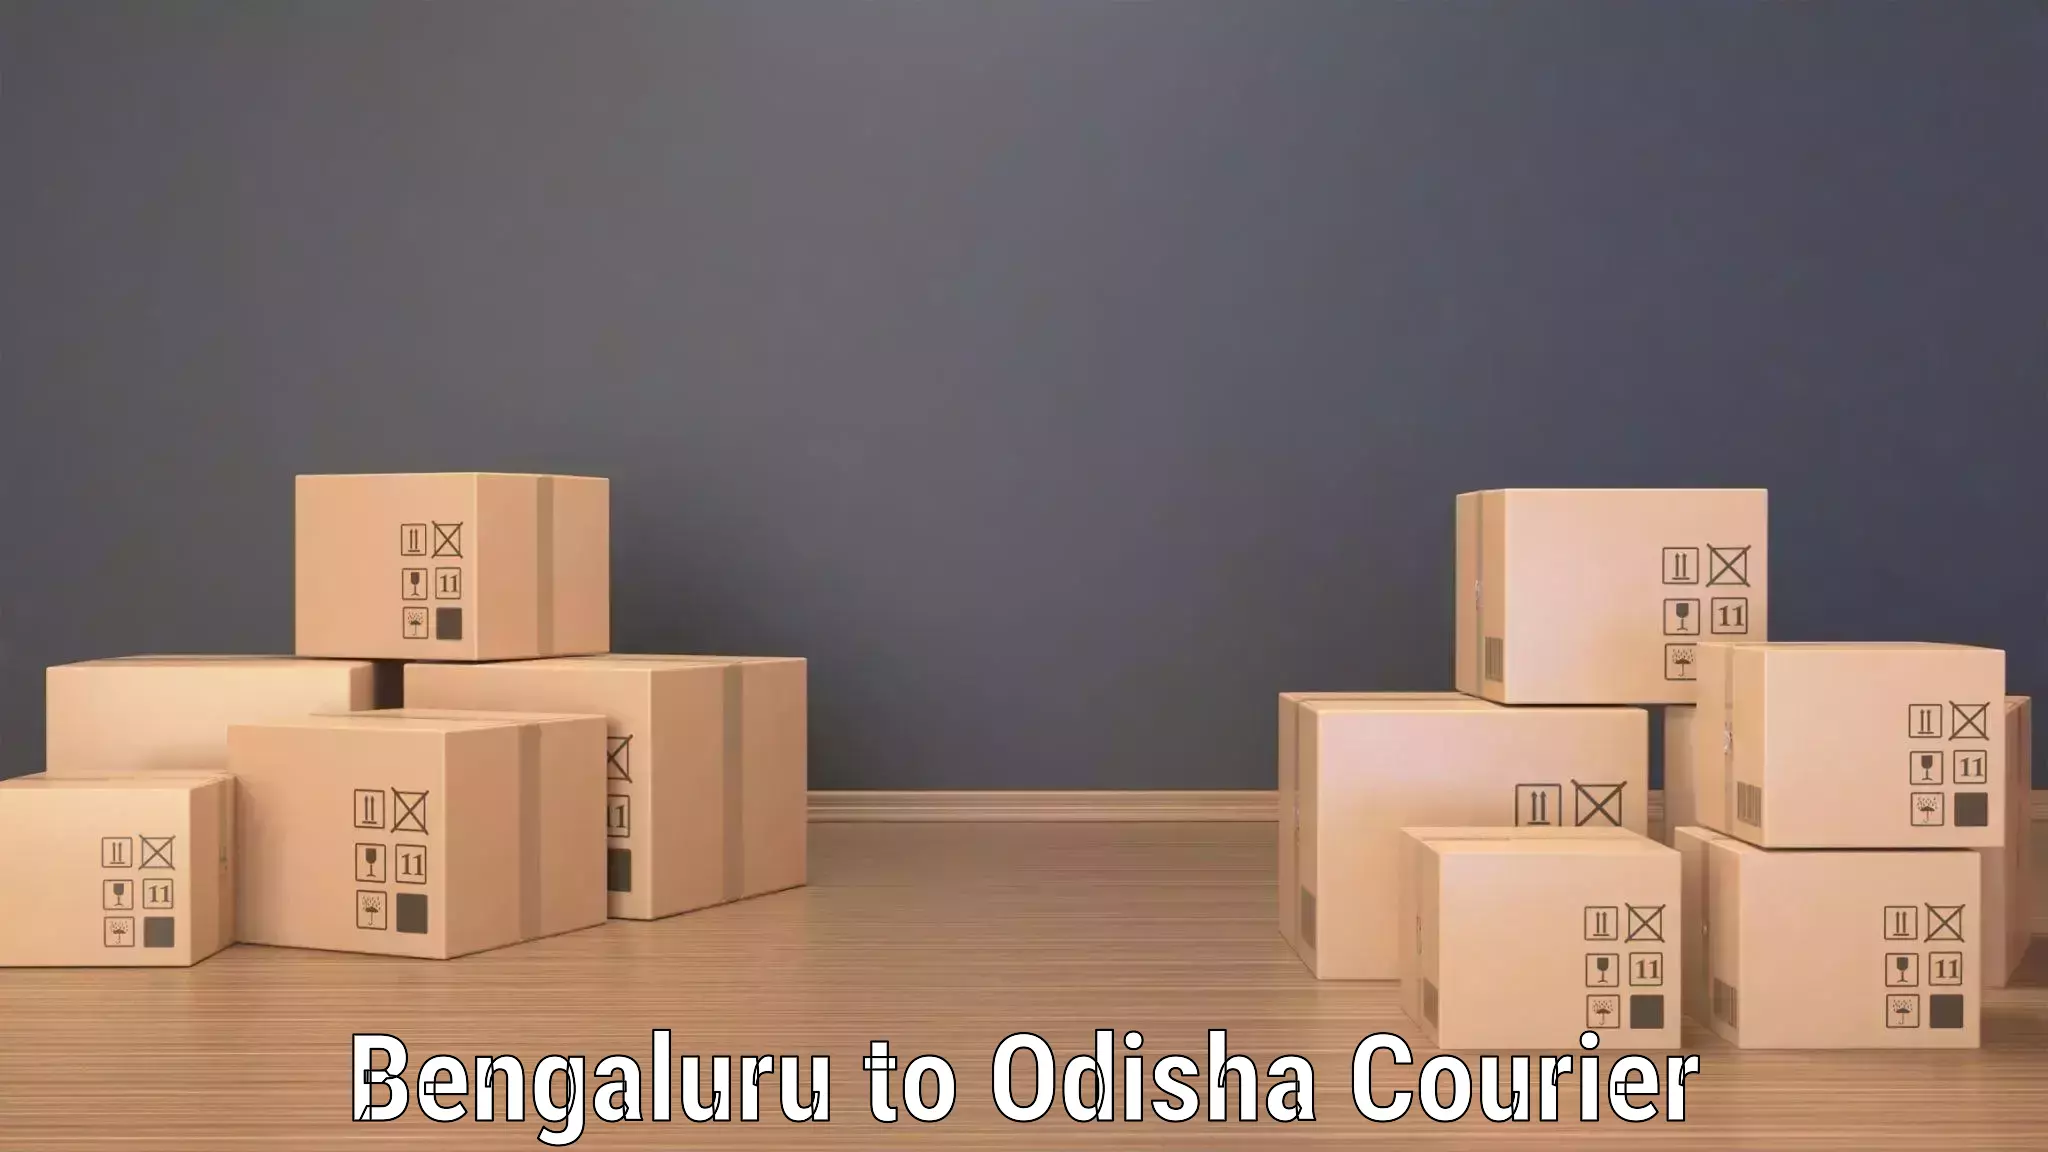 Door-to-door shipment in Bengaluru to Dandisahi